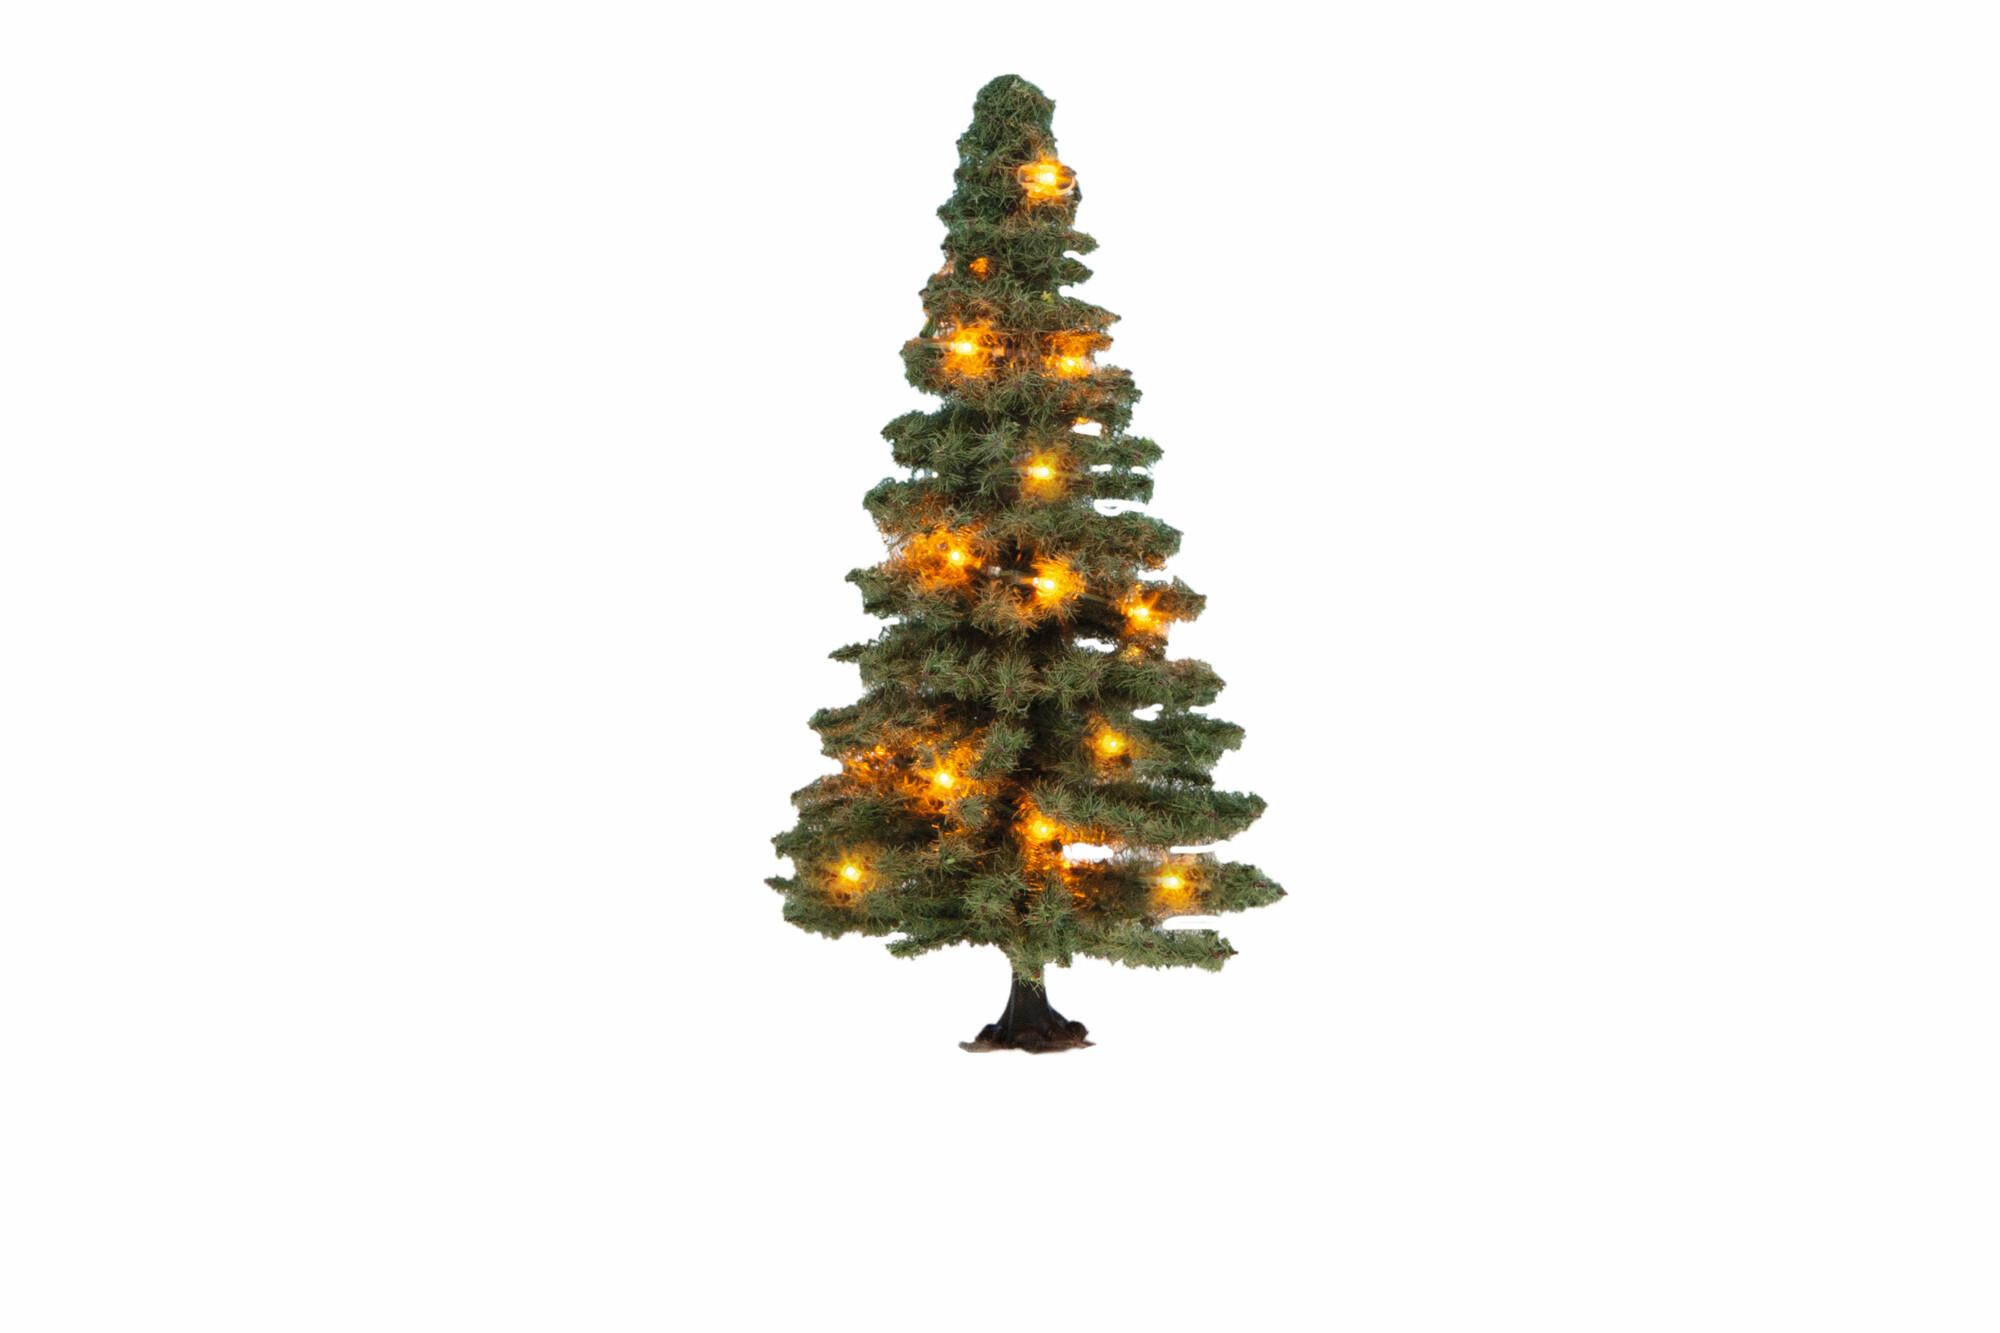 NOCH Beleuchteter Weihnachtsbaum, grün, mit 20 LEDs, 8 cm hoch